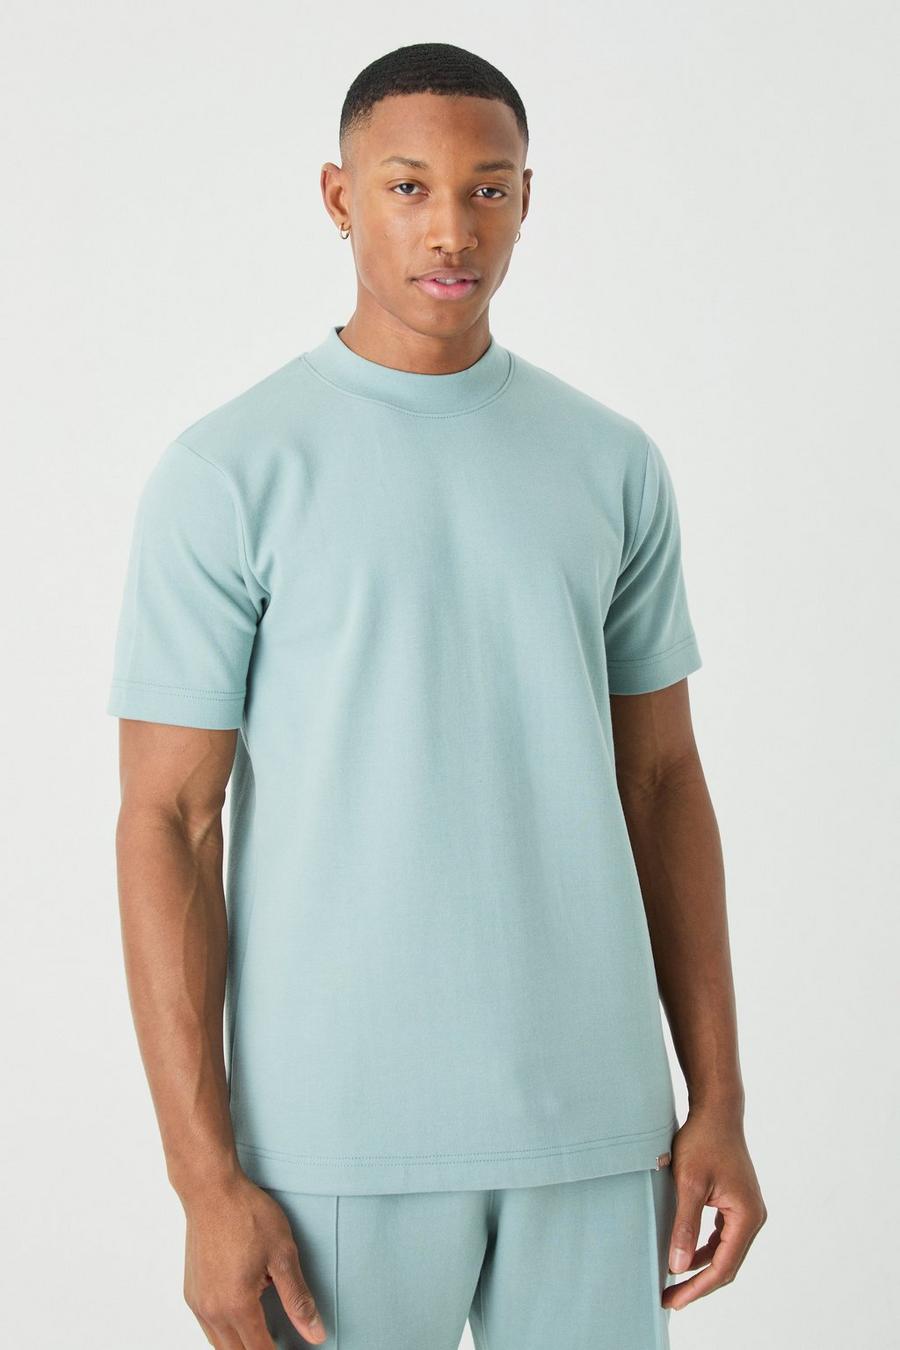 T-shirt Man Slim Fit in maglia intrecciata pesante con girocollo esteso, Dusty blue